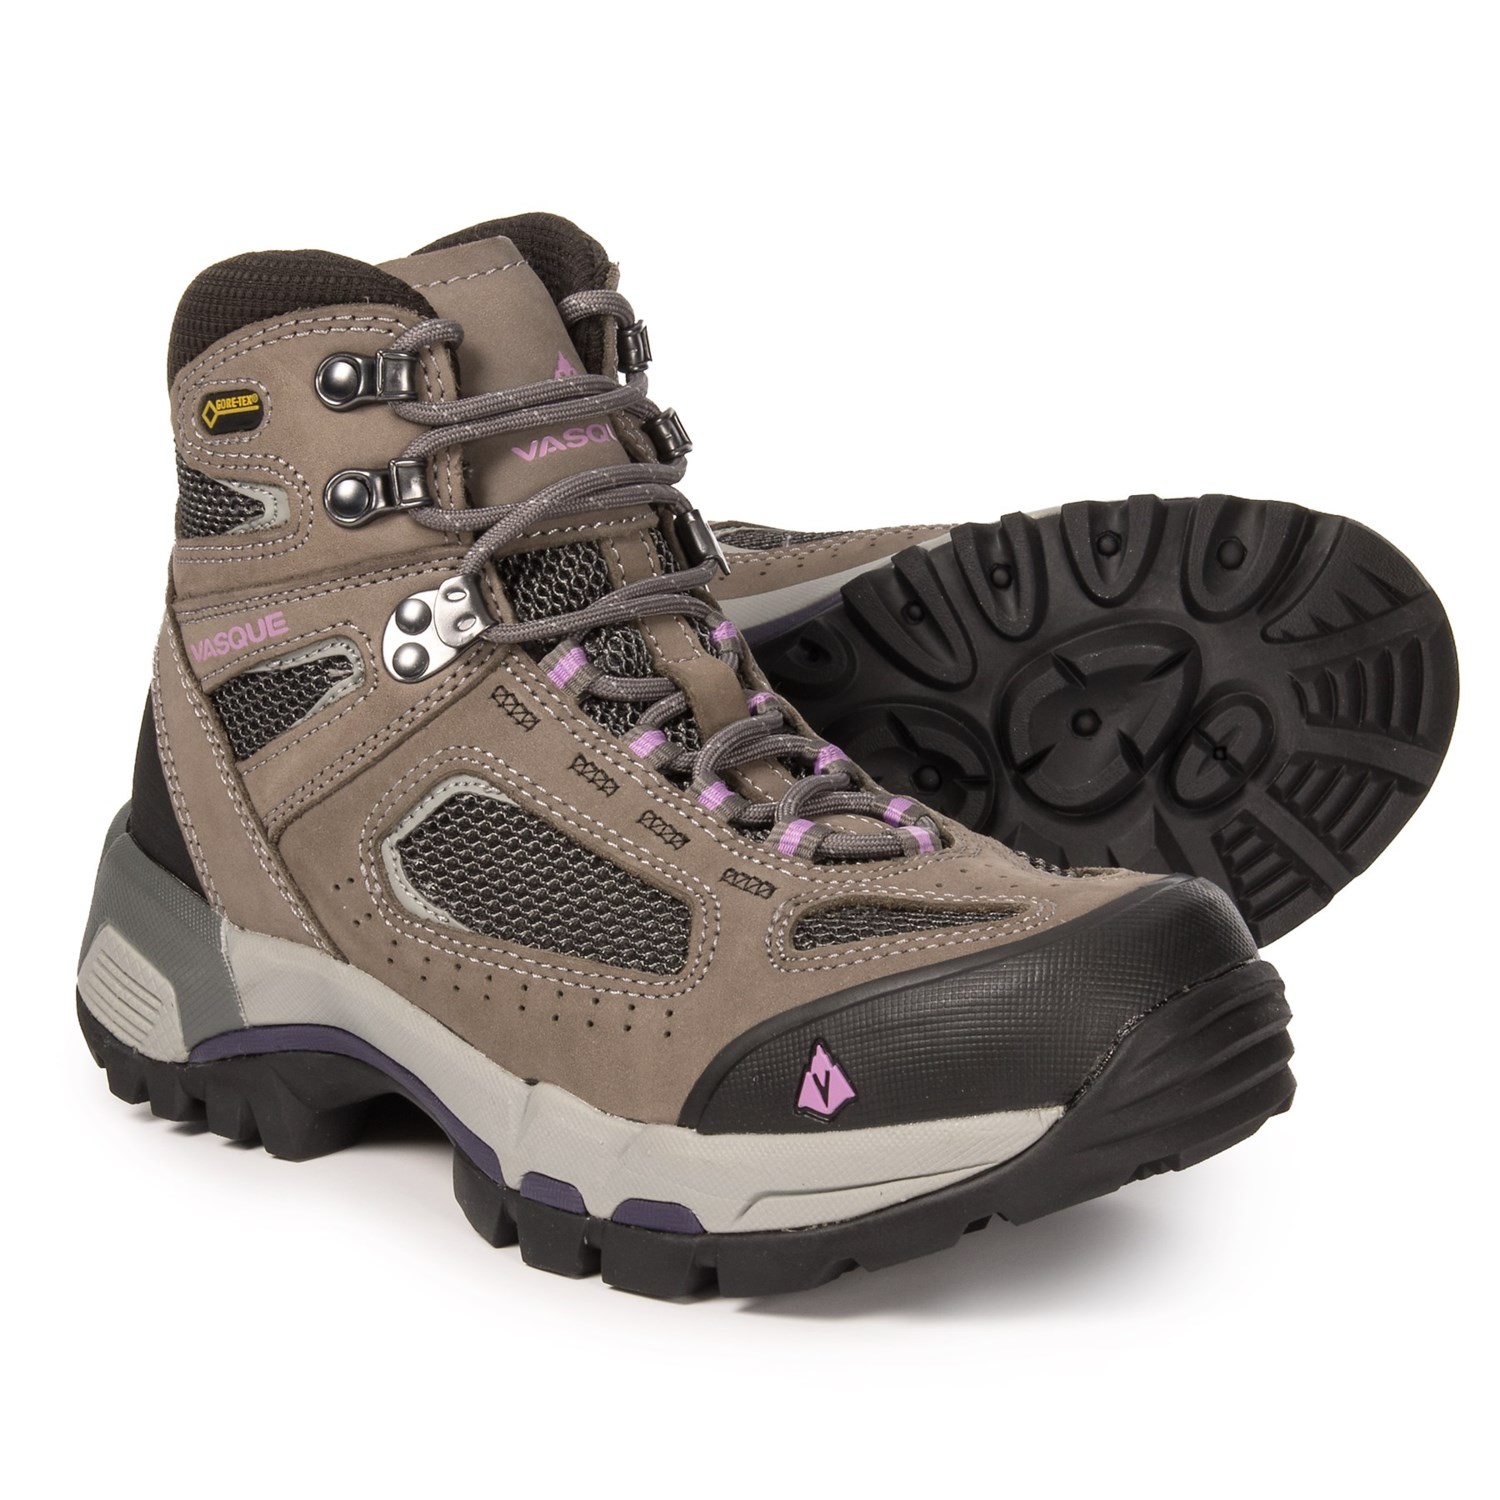 Vasque Breeze 2.0 Gore-Tex® Hiking Boots – Waterproof (For Women)